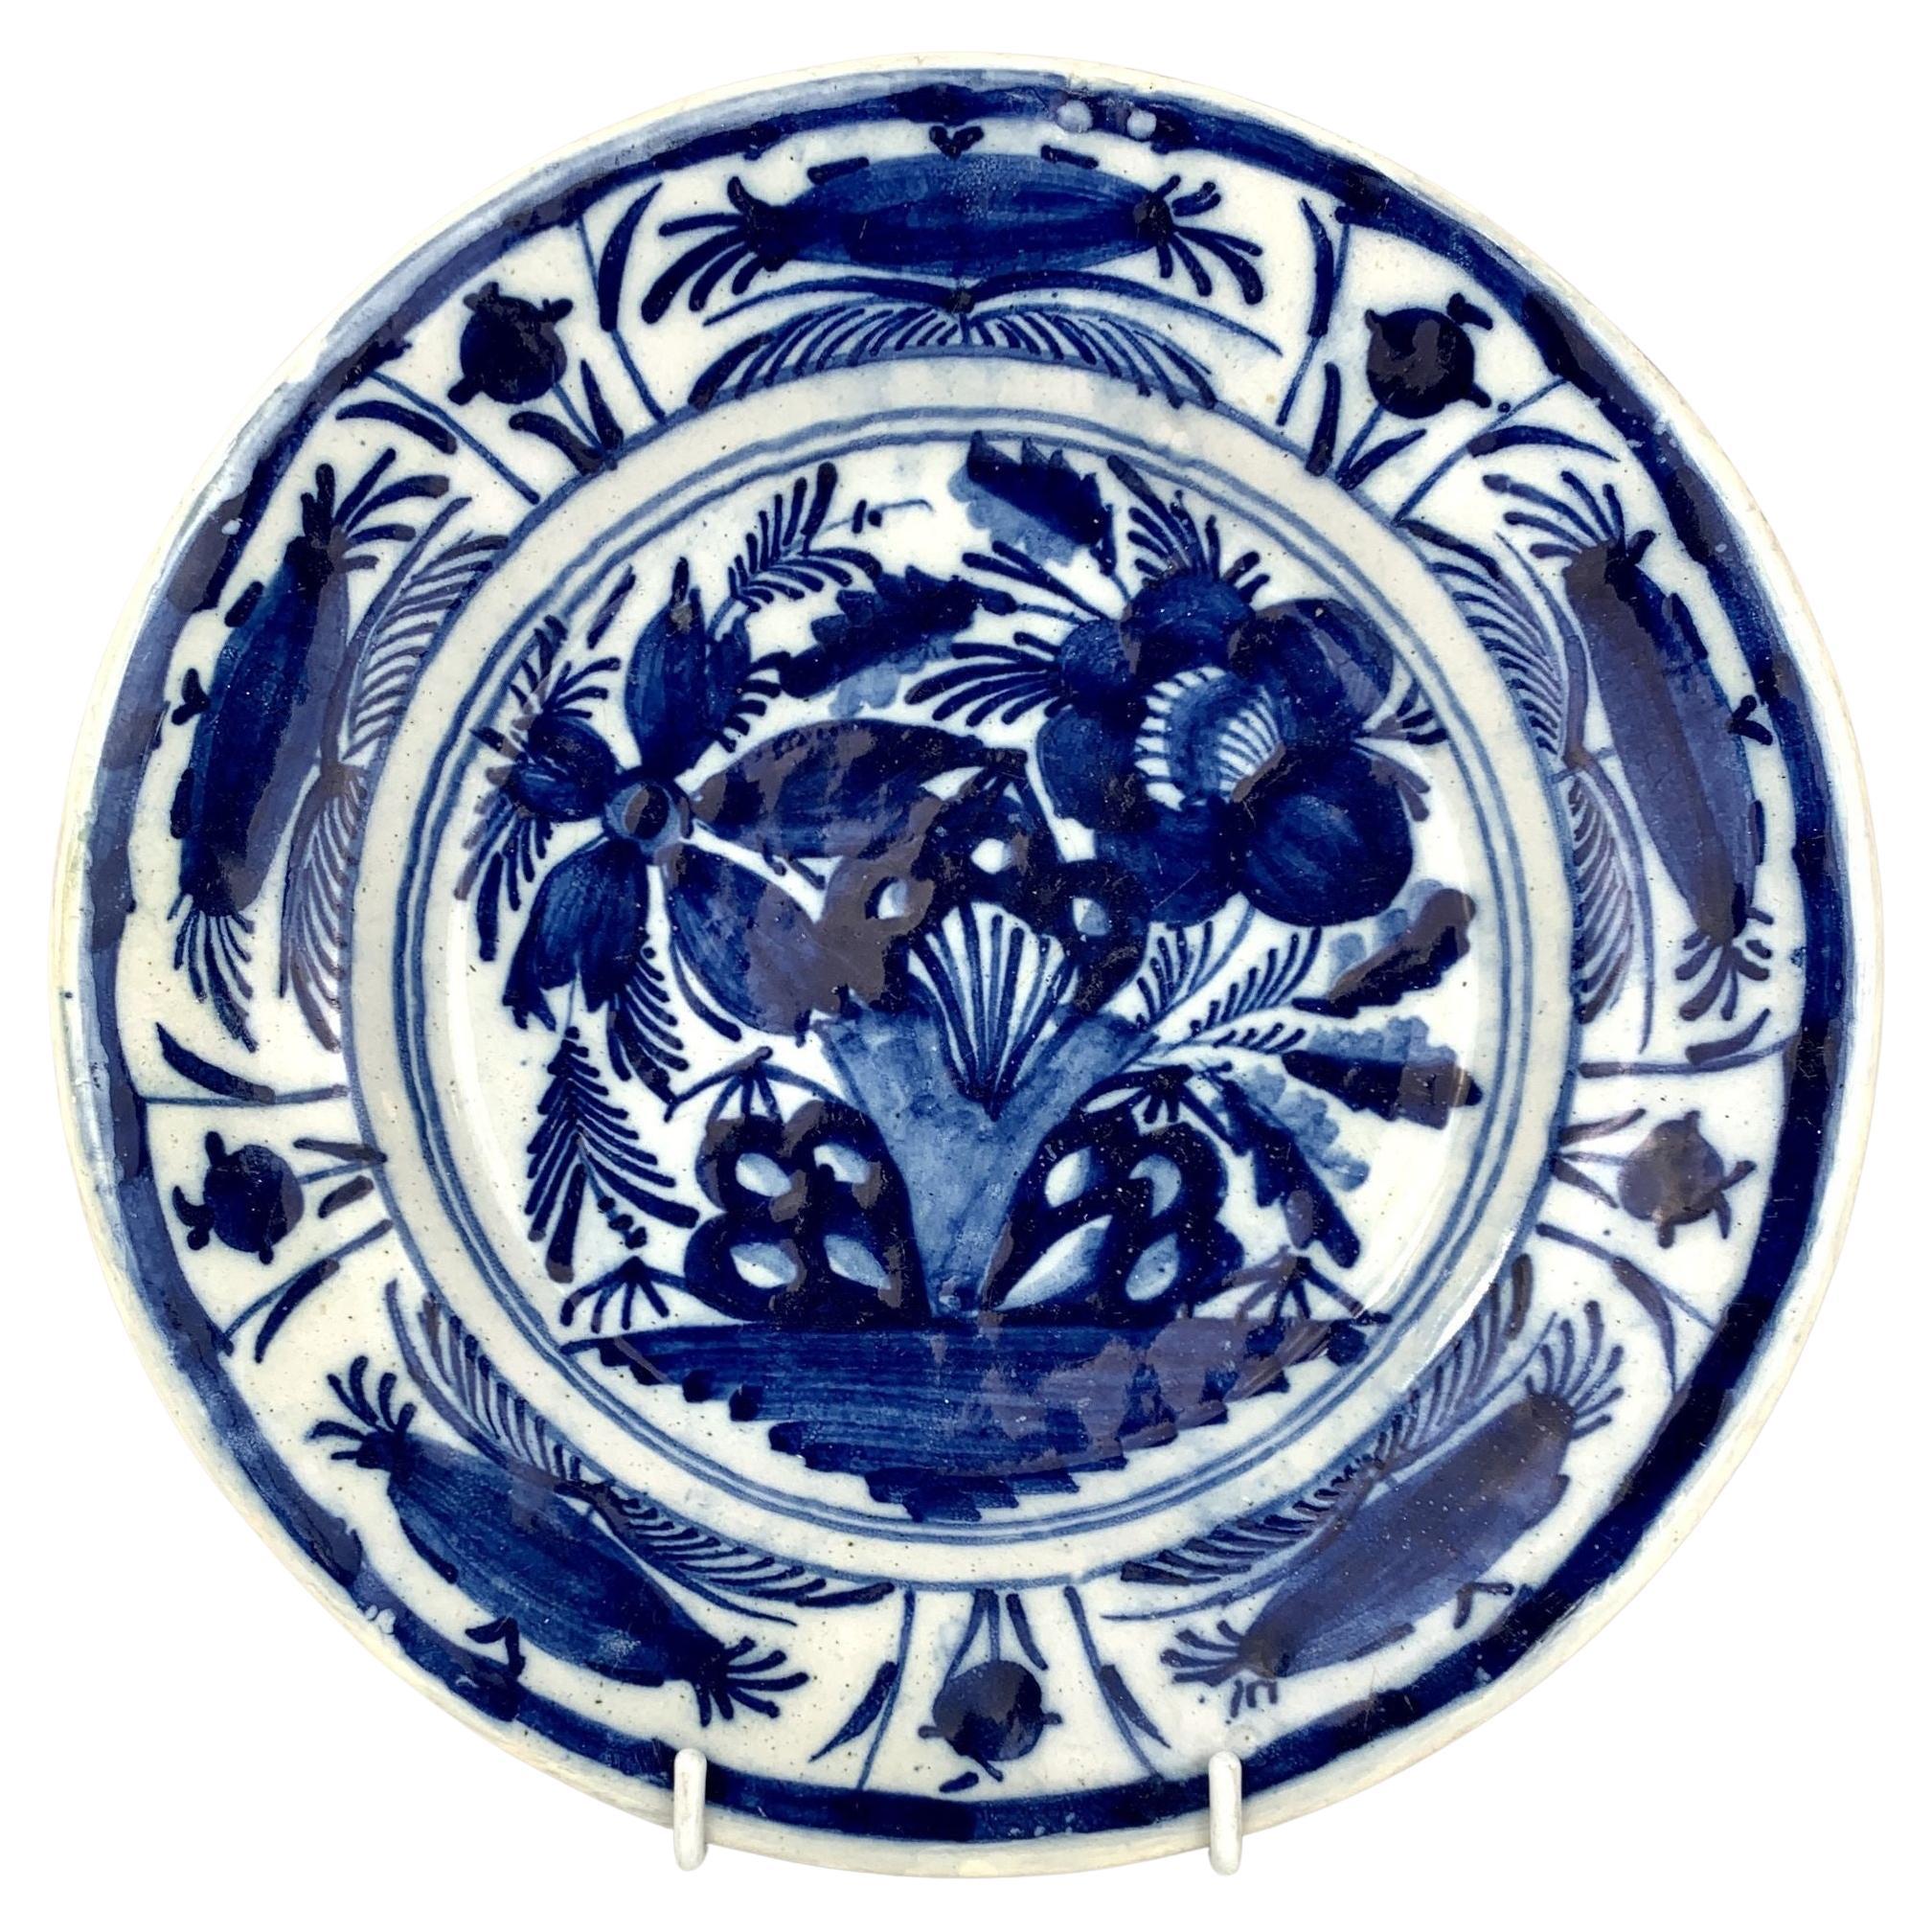 Assiette ou plat en faïence de Delft bleu et blanc peint à la main vers 1800